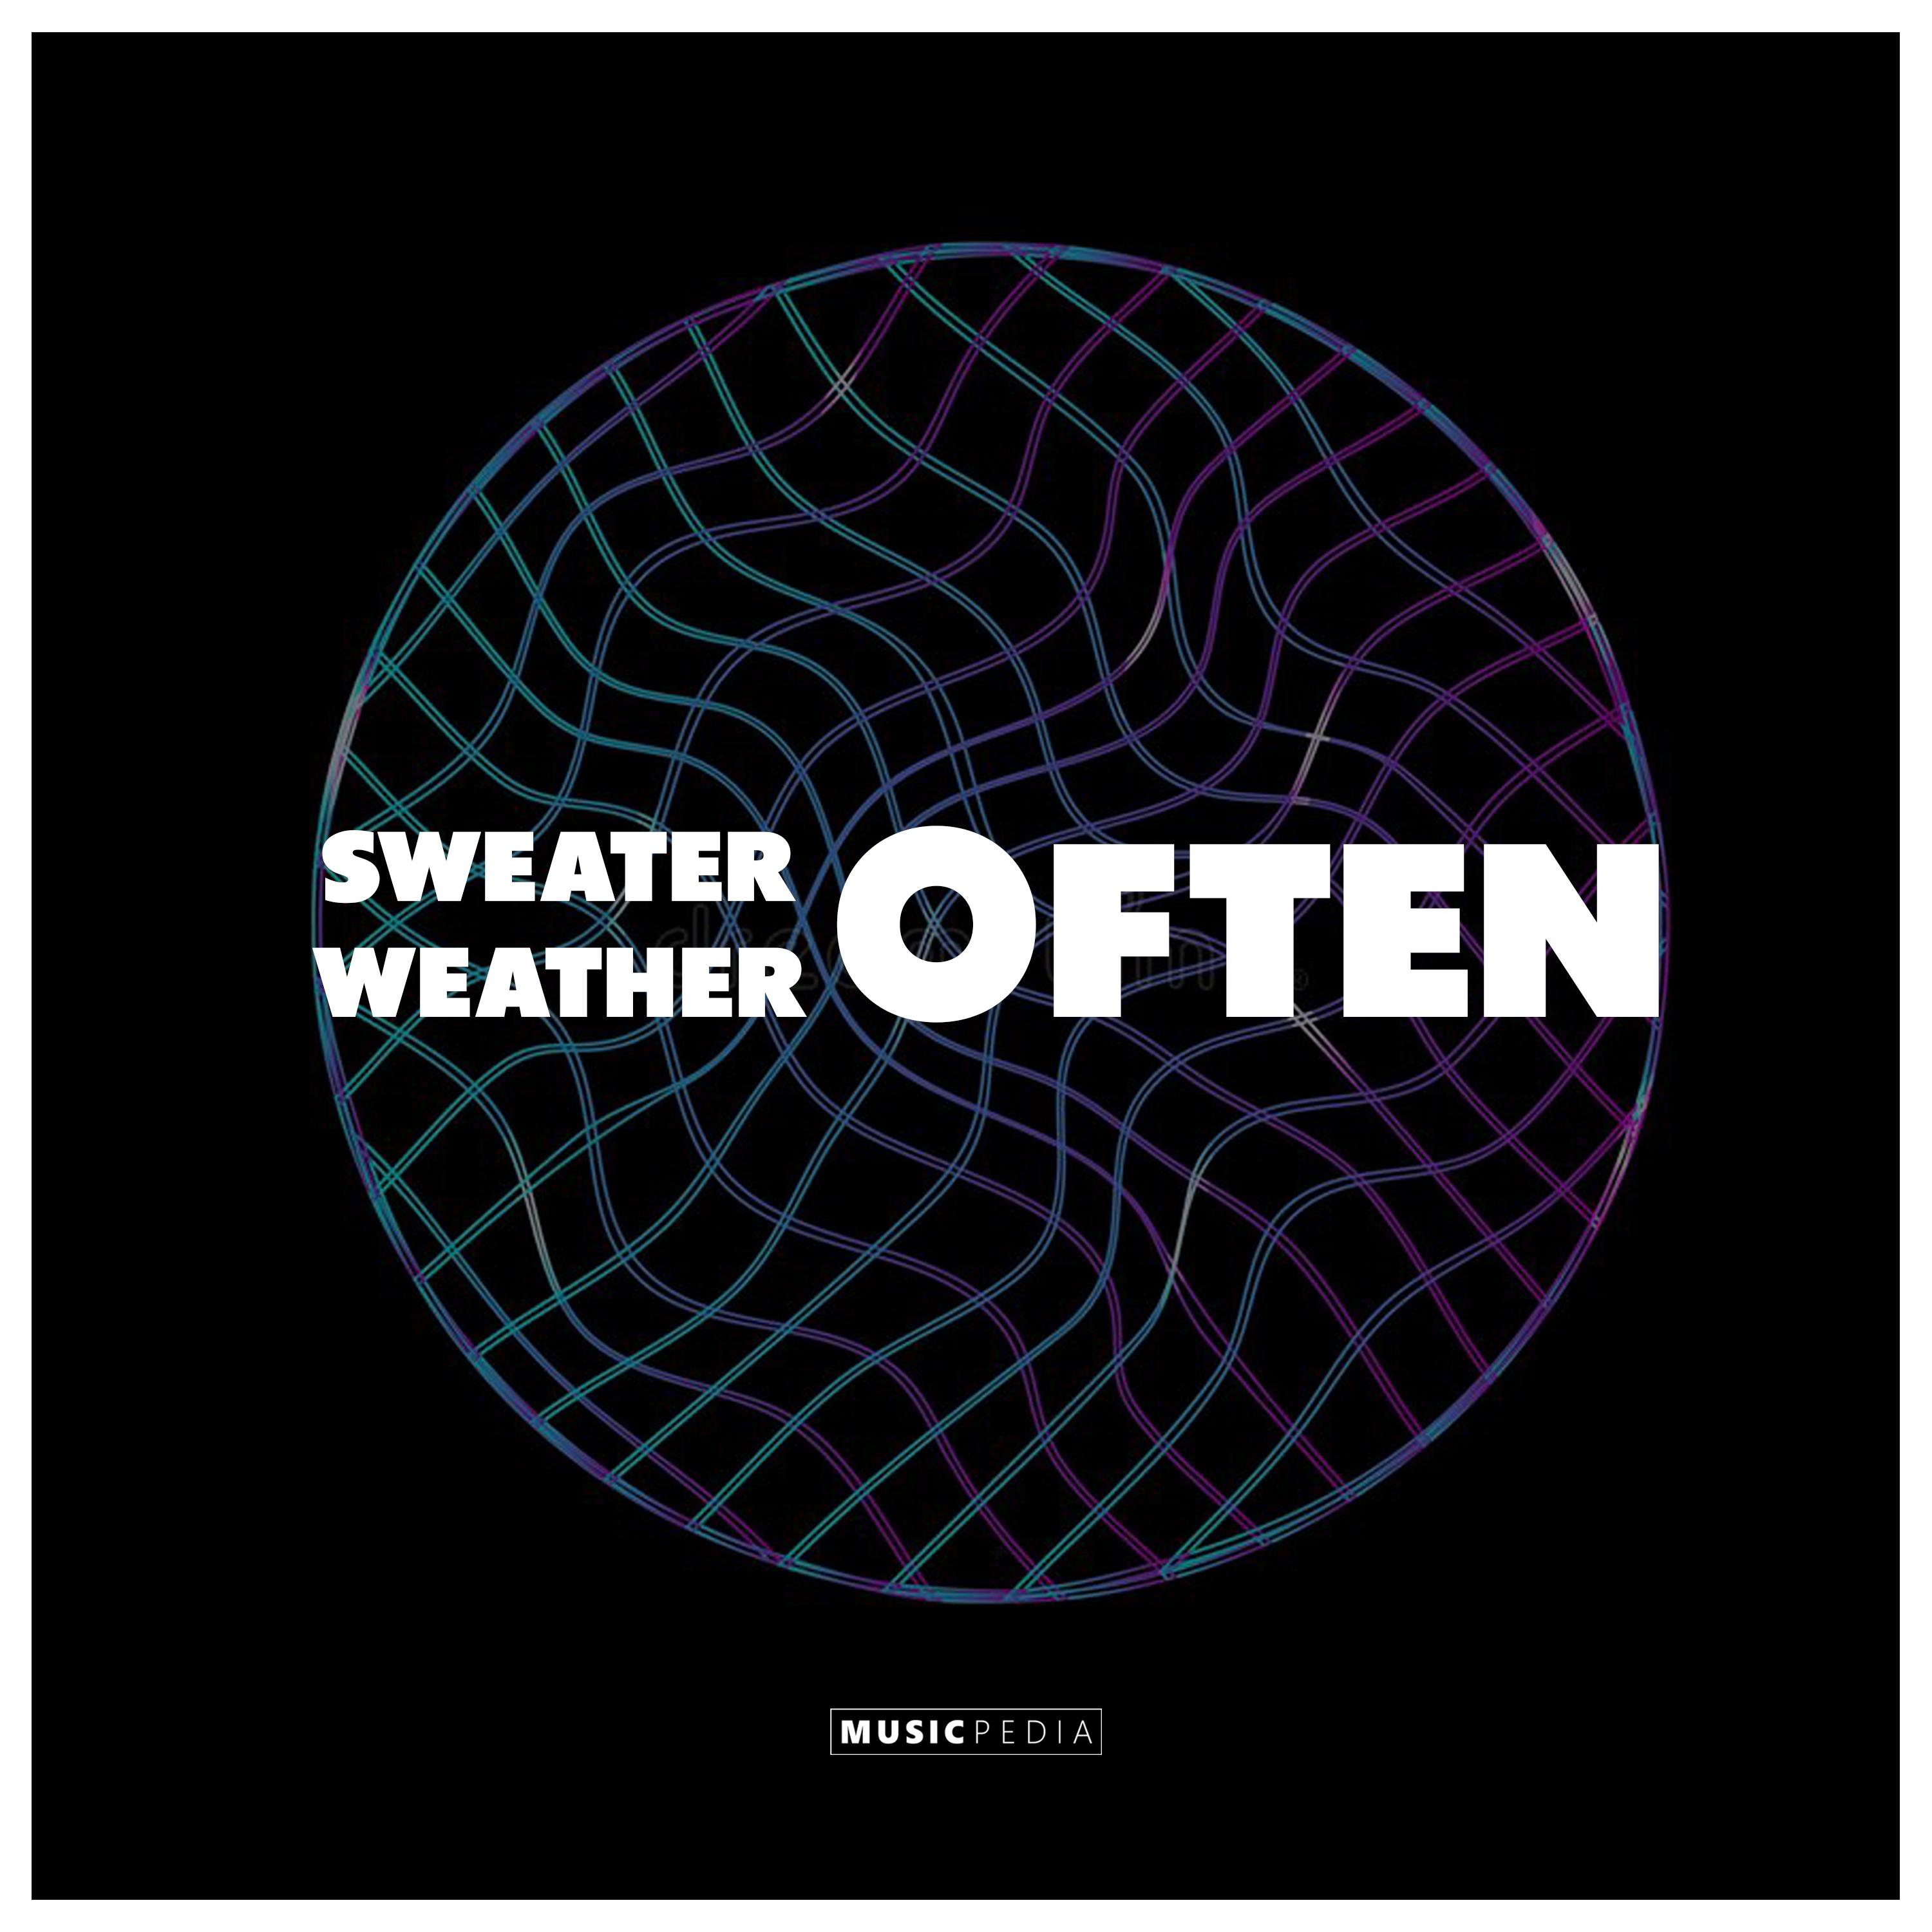 Sweater Weather Often歌词 歌手Farizki-专辑Sweater Weather Often-单曲《Sweater Weather Often》LRC歌词下载